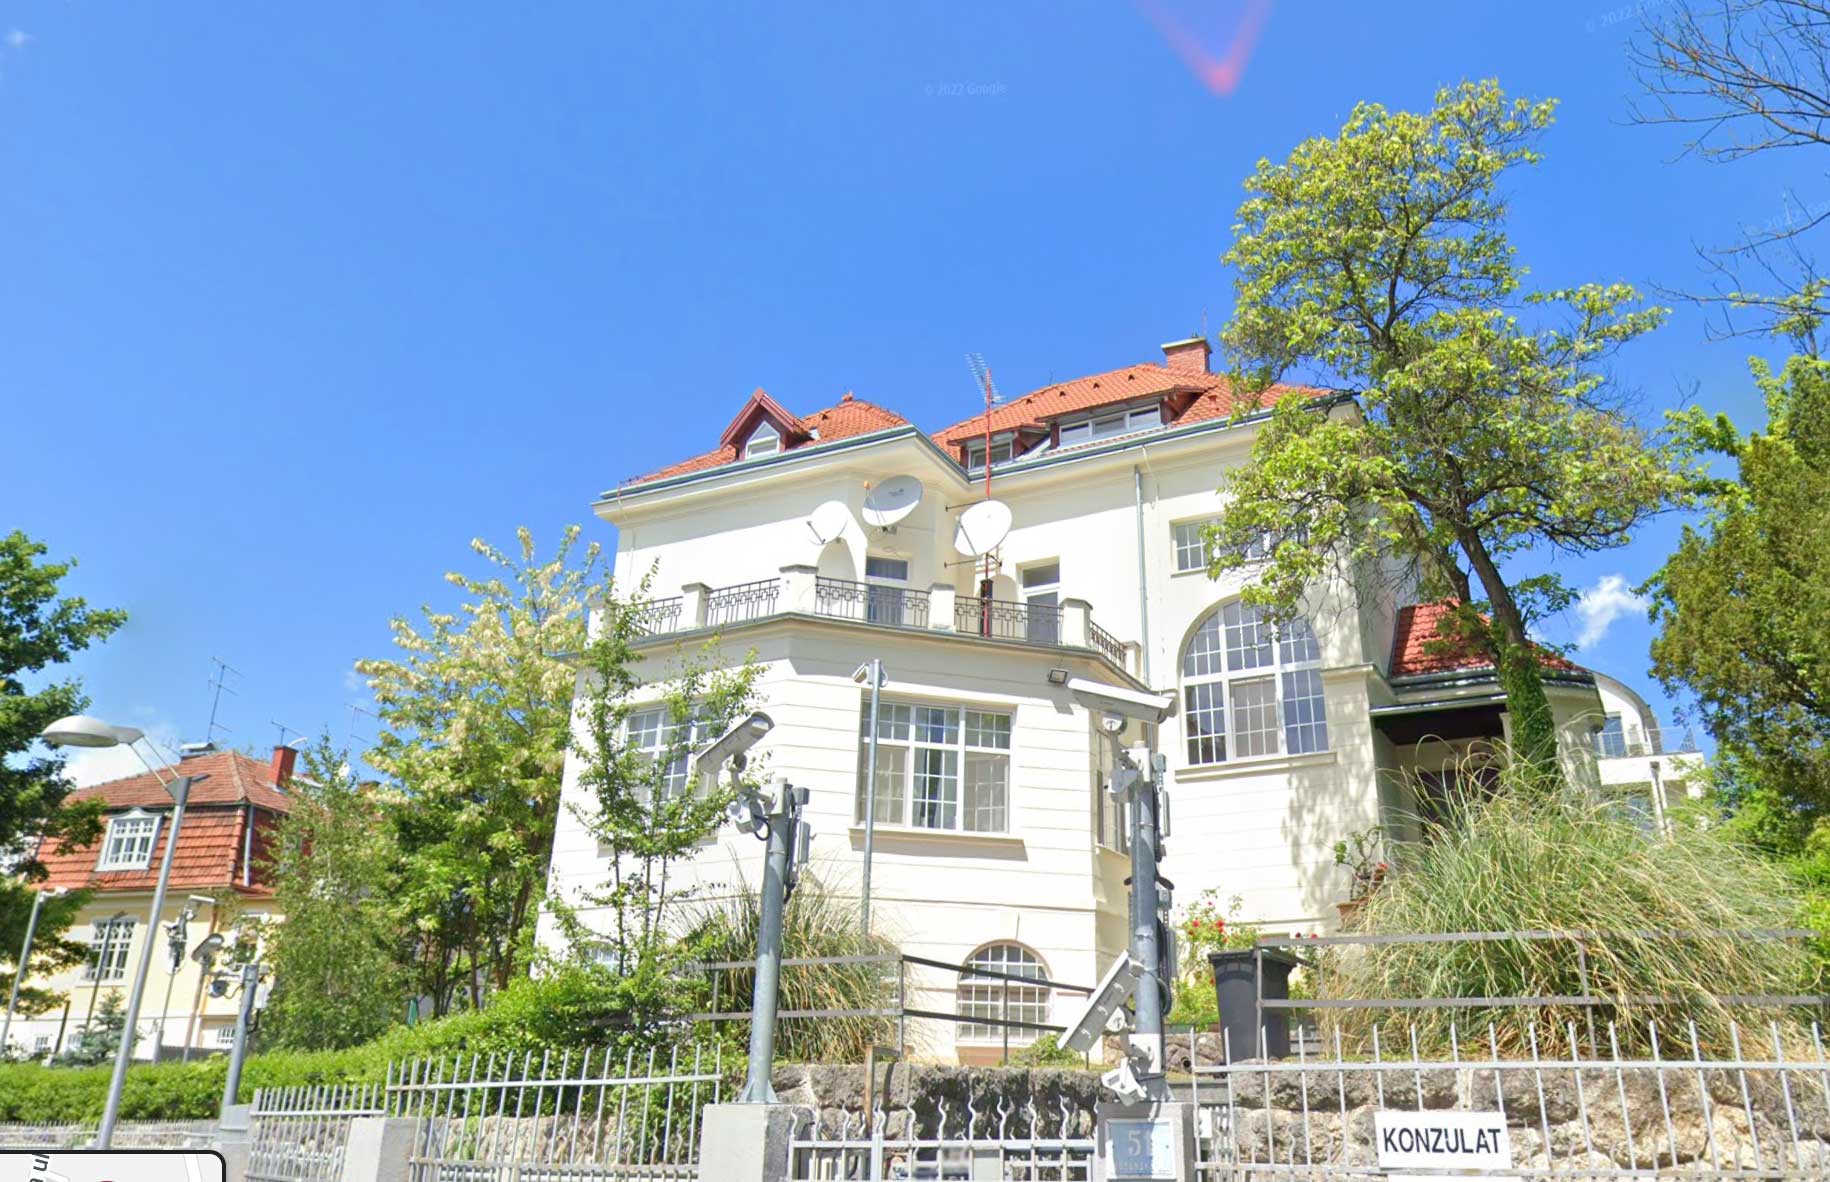 Параболические антенны и решетки Яги— Удда на посольстве России в Республике Хорватии (Google Earth)